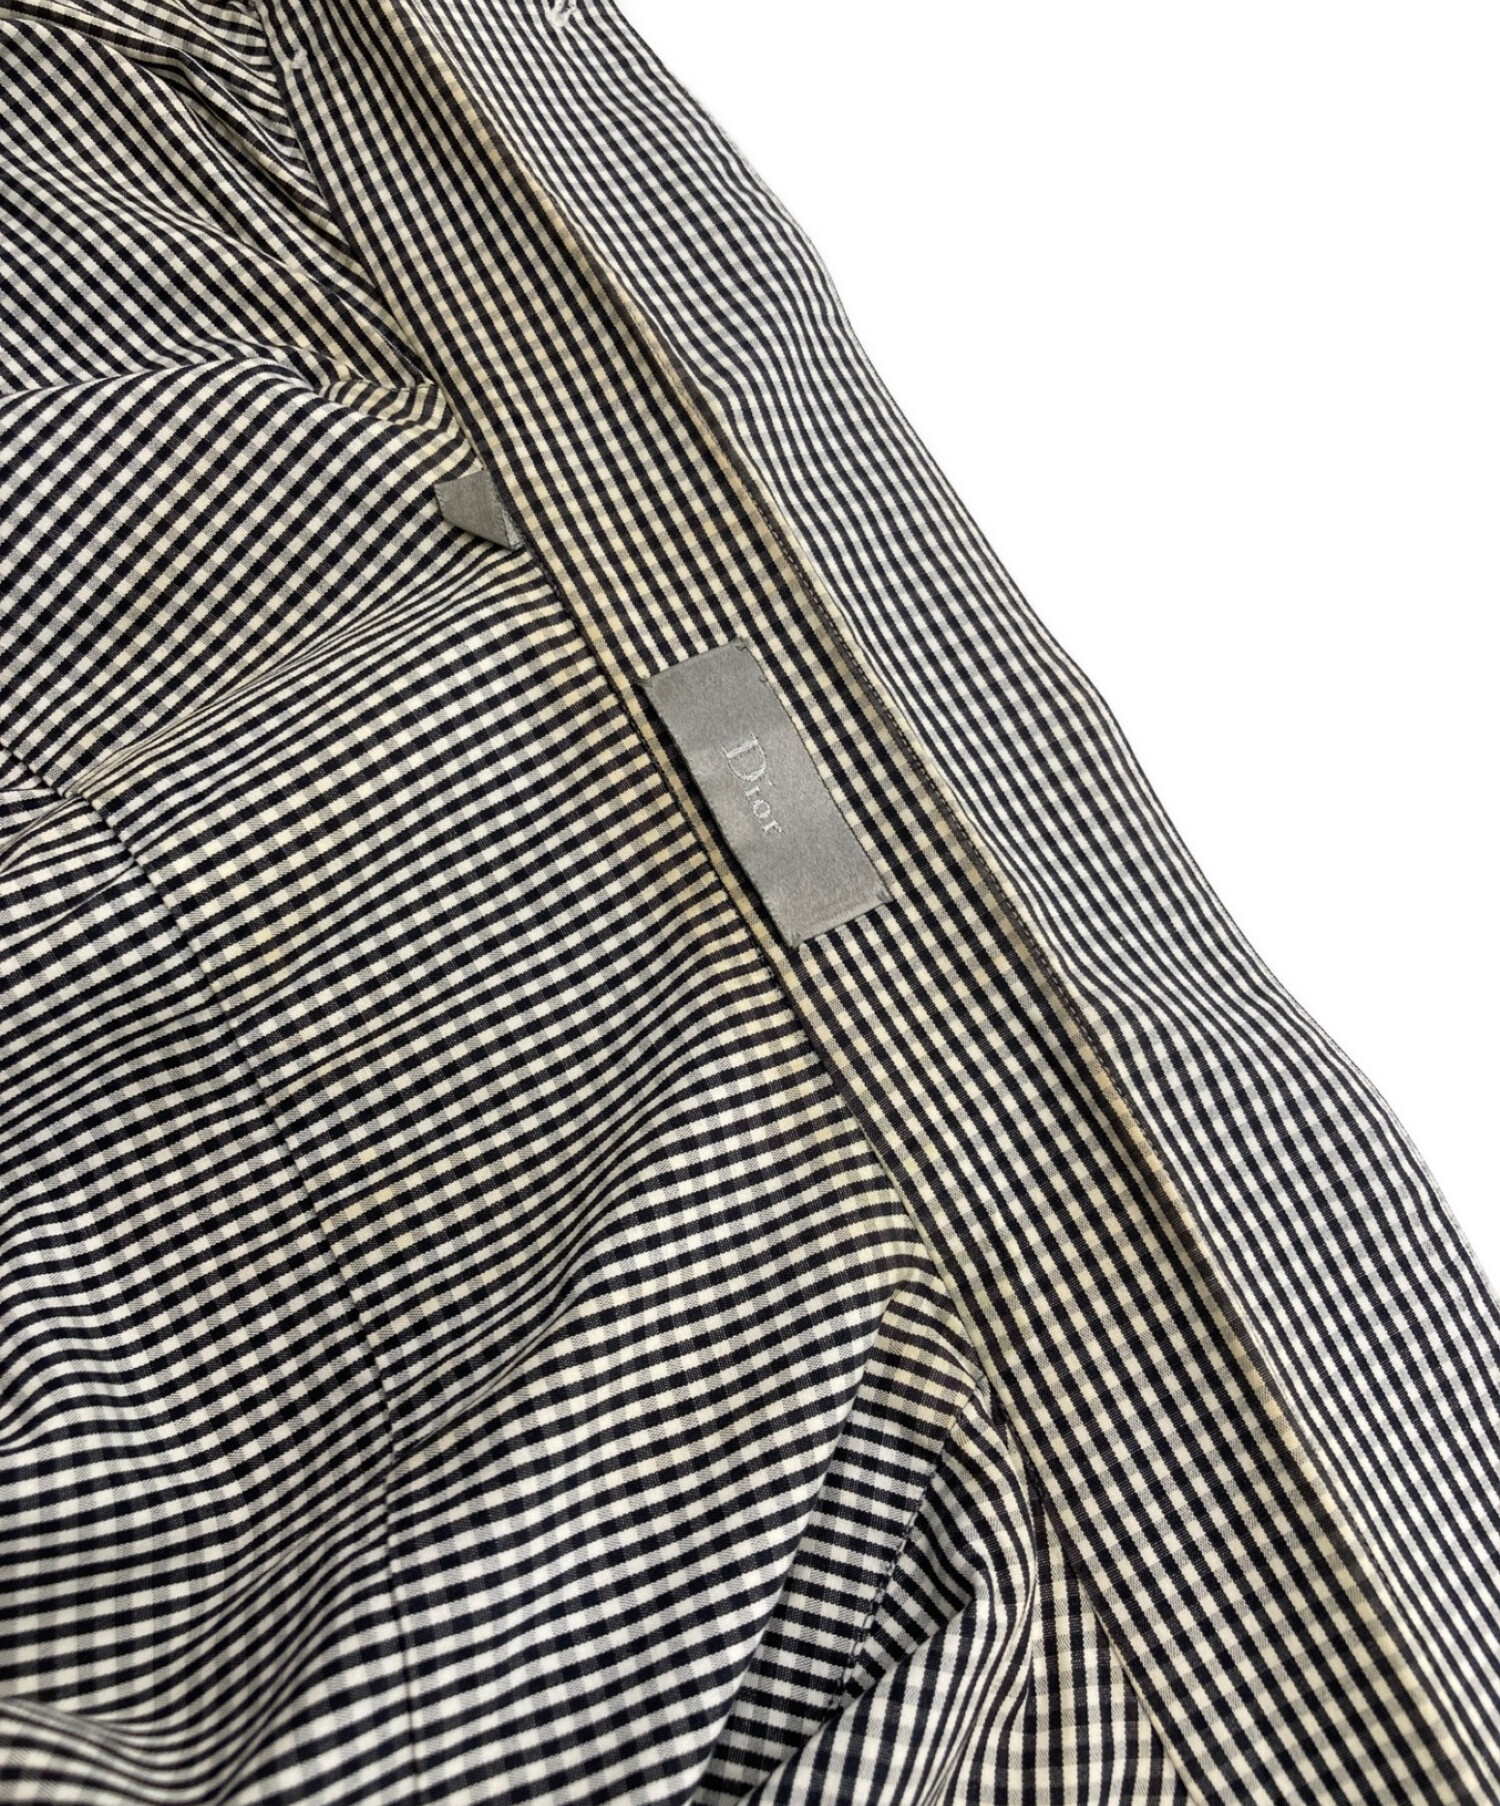 Christian Dior (クリスチャン ディオール) 06S/S ノースリーブギンガムチェックシャツ ブラック×ホワイト サイズ:37